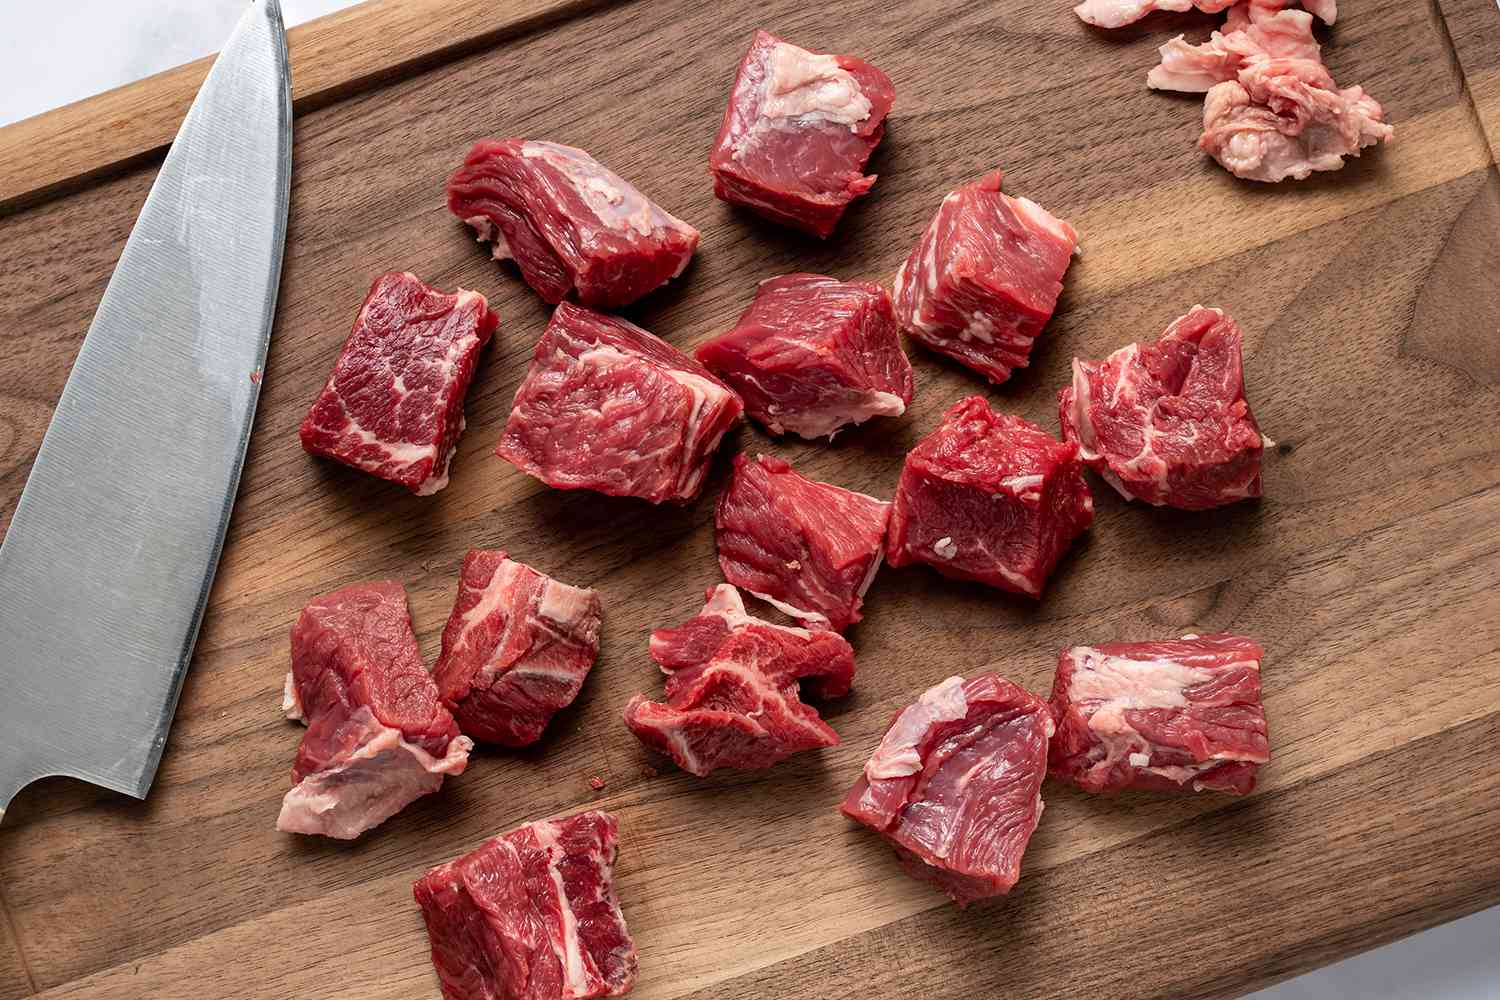 sliced, seasoned meat on a cutting board 